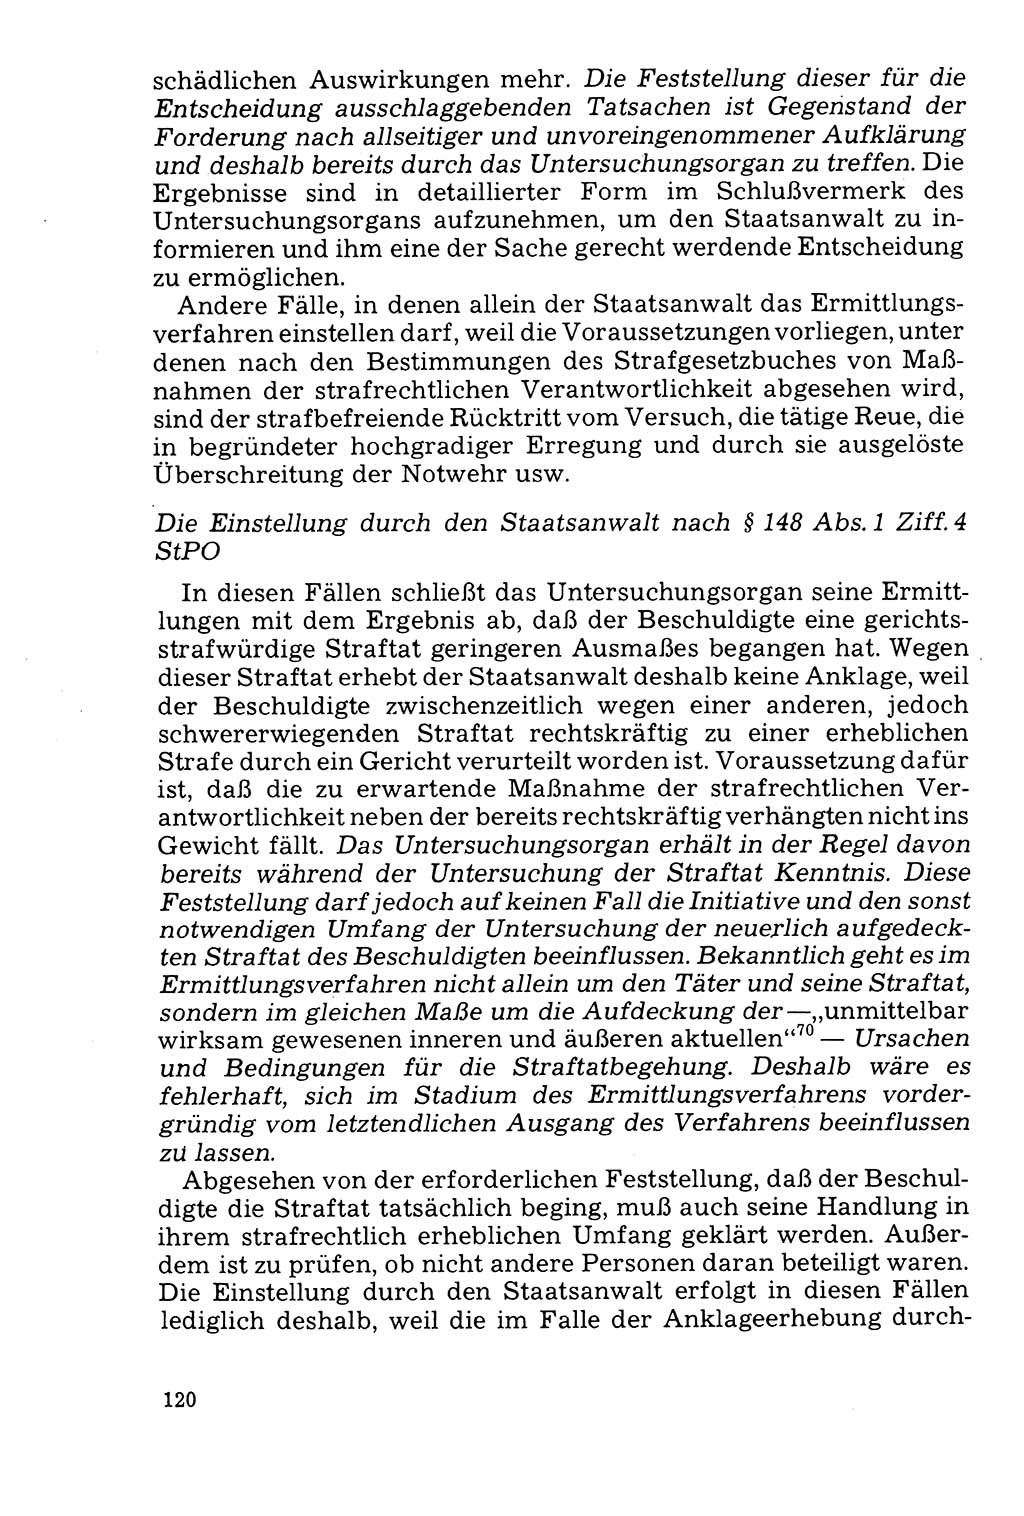 Der Abschluß des Ermittlungsverfahrens [Deutsche Demokratische Republik (DDR)] 1978, Seite 120 (Abschl. EV DDR 1978, S. 120)